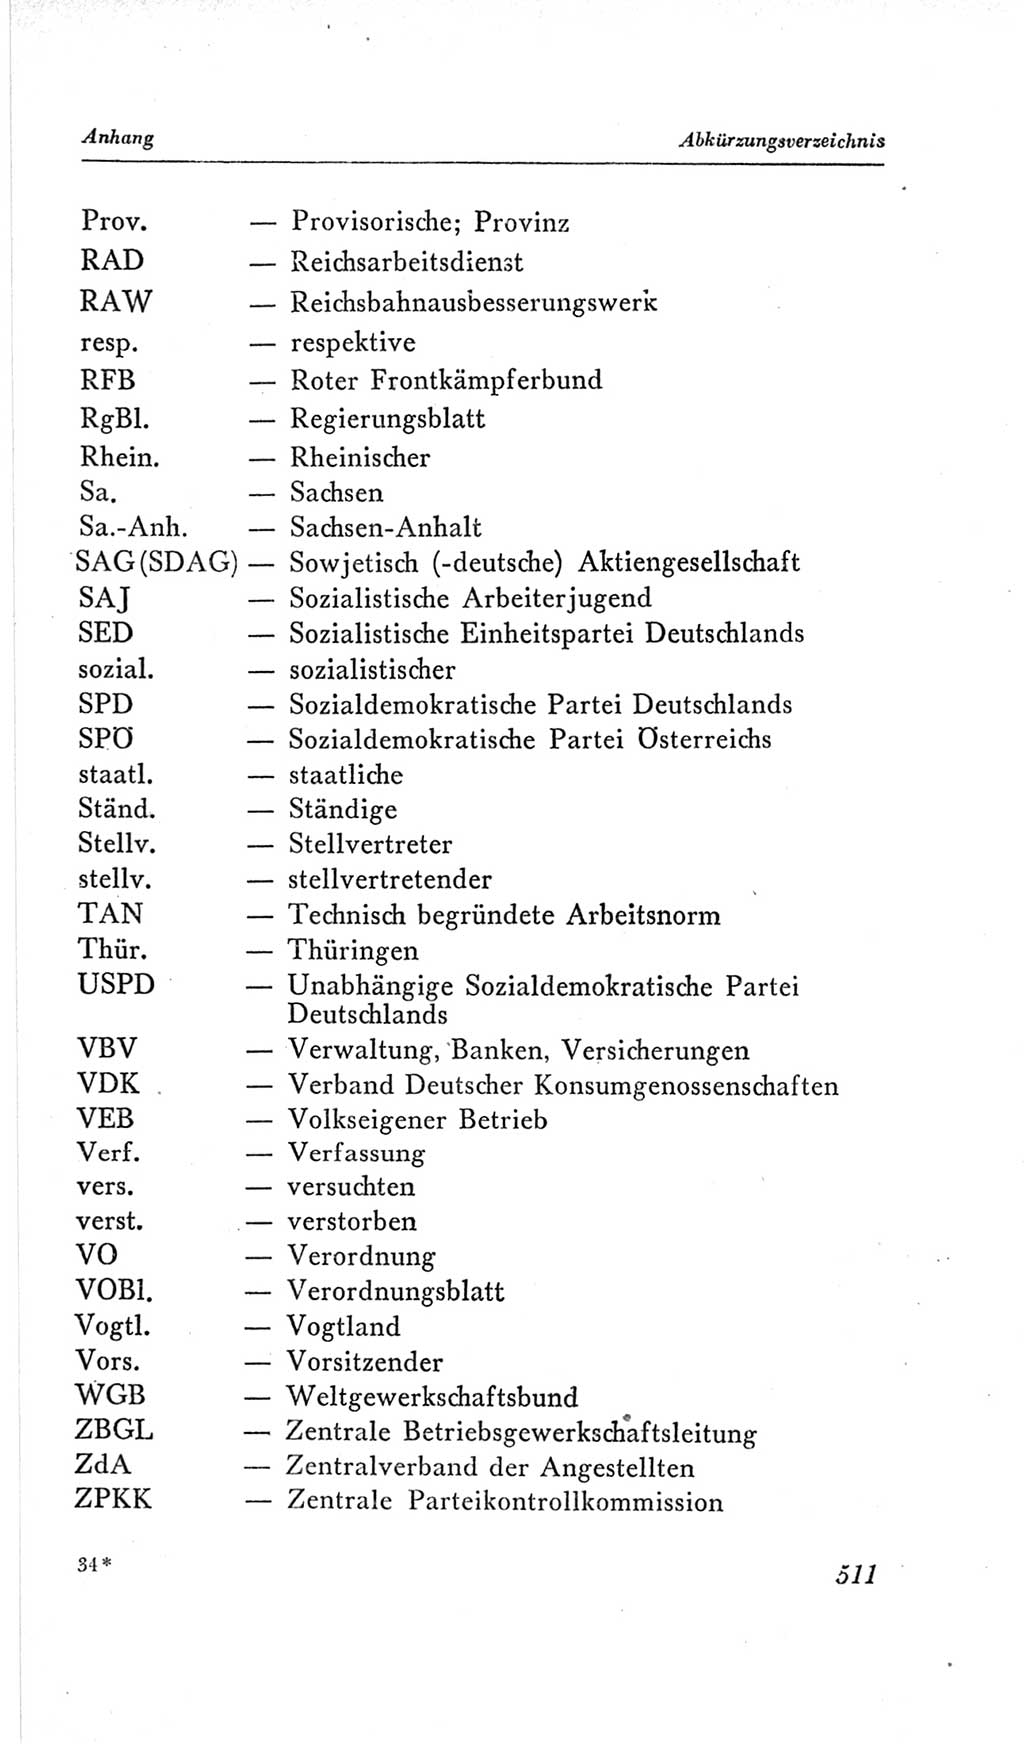 Handbuch der Volkskammer (VK) der Deutschen Demokratischen Republik (DDR), 2. Wahlperiode 1954-1958, Seite 511 (Hdb. VK. DDR, 2. WP. 1954-1958, S. 511)